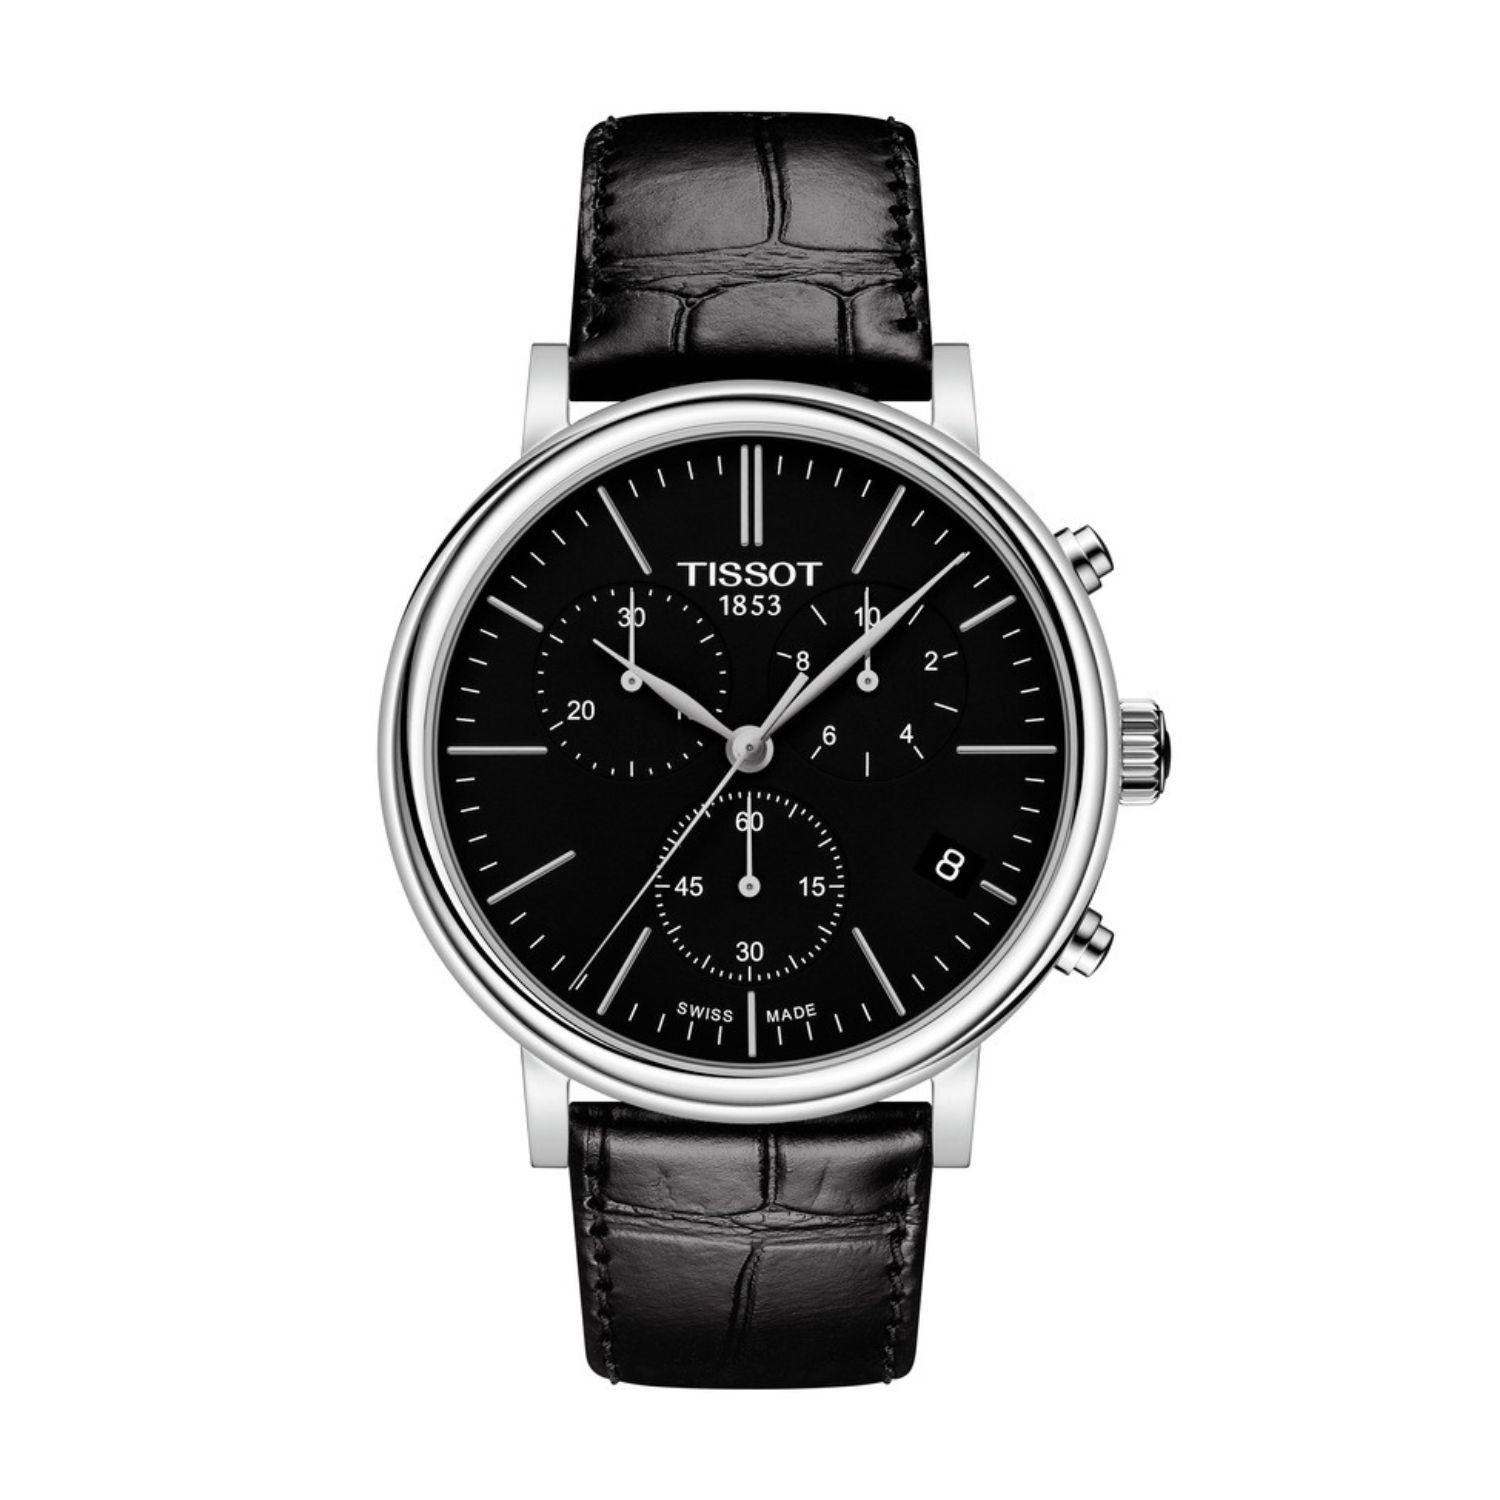 Edelstahl/schwarz Chronograph Herren-Uhr Tissot Tissot T122.417.16.051.00